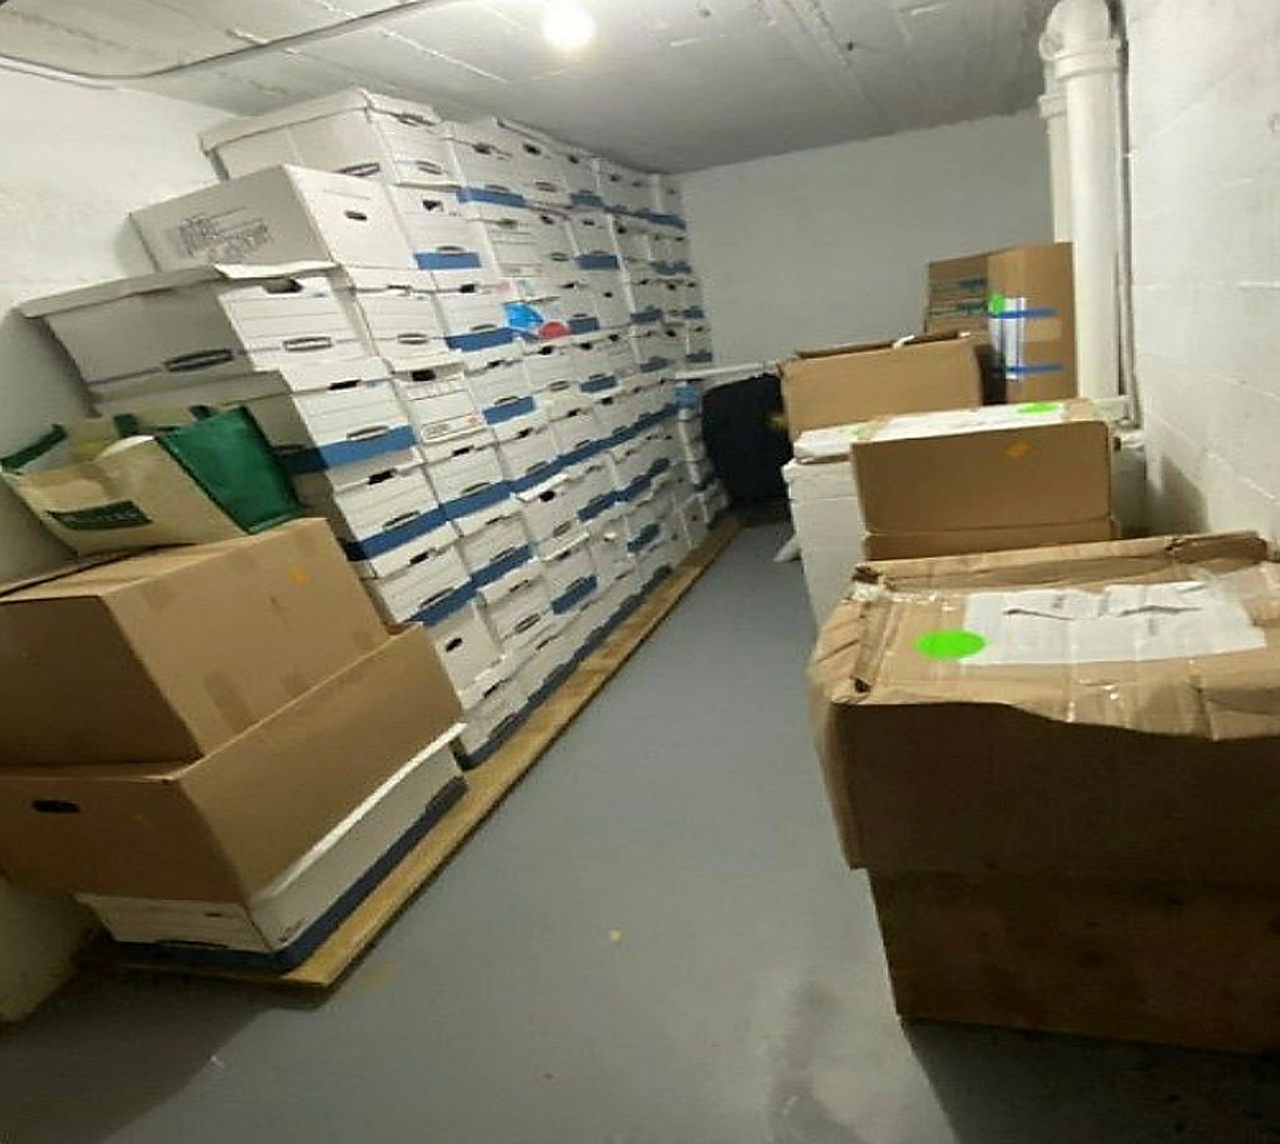 Коробки, предположительно содержащие секретные документы, были сложены в комнатах поместья в Мар-а-Лаго.